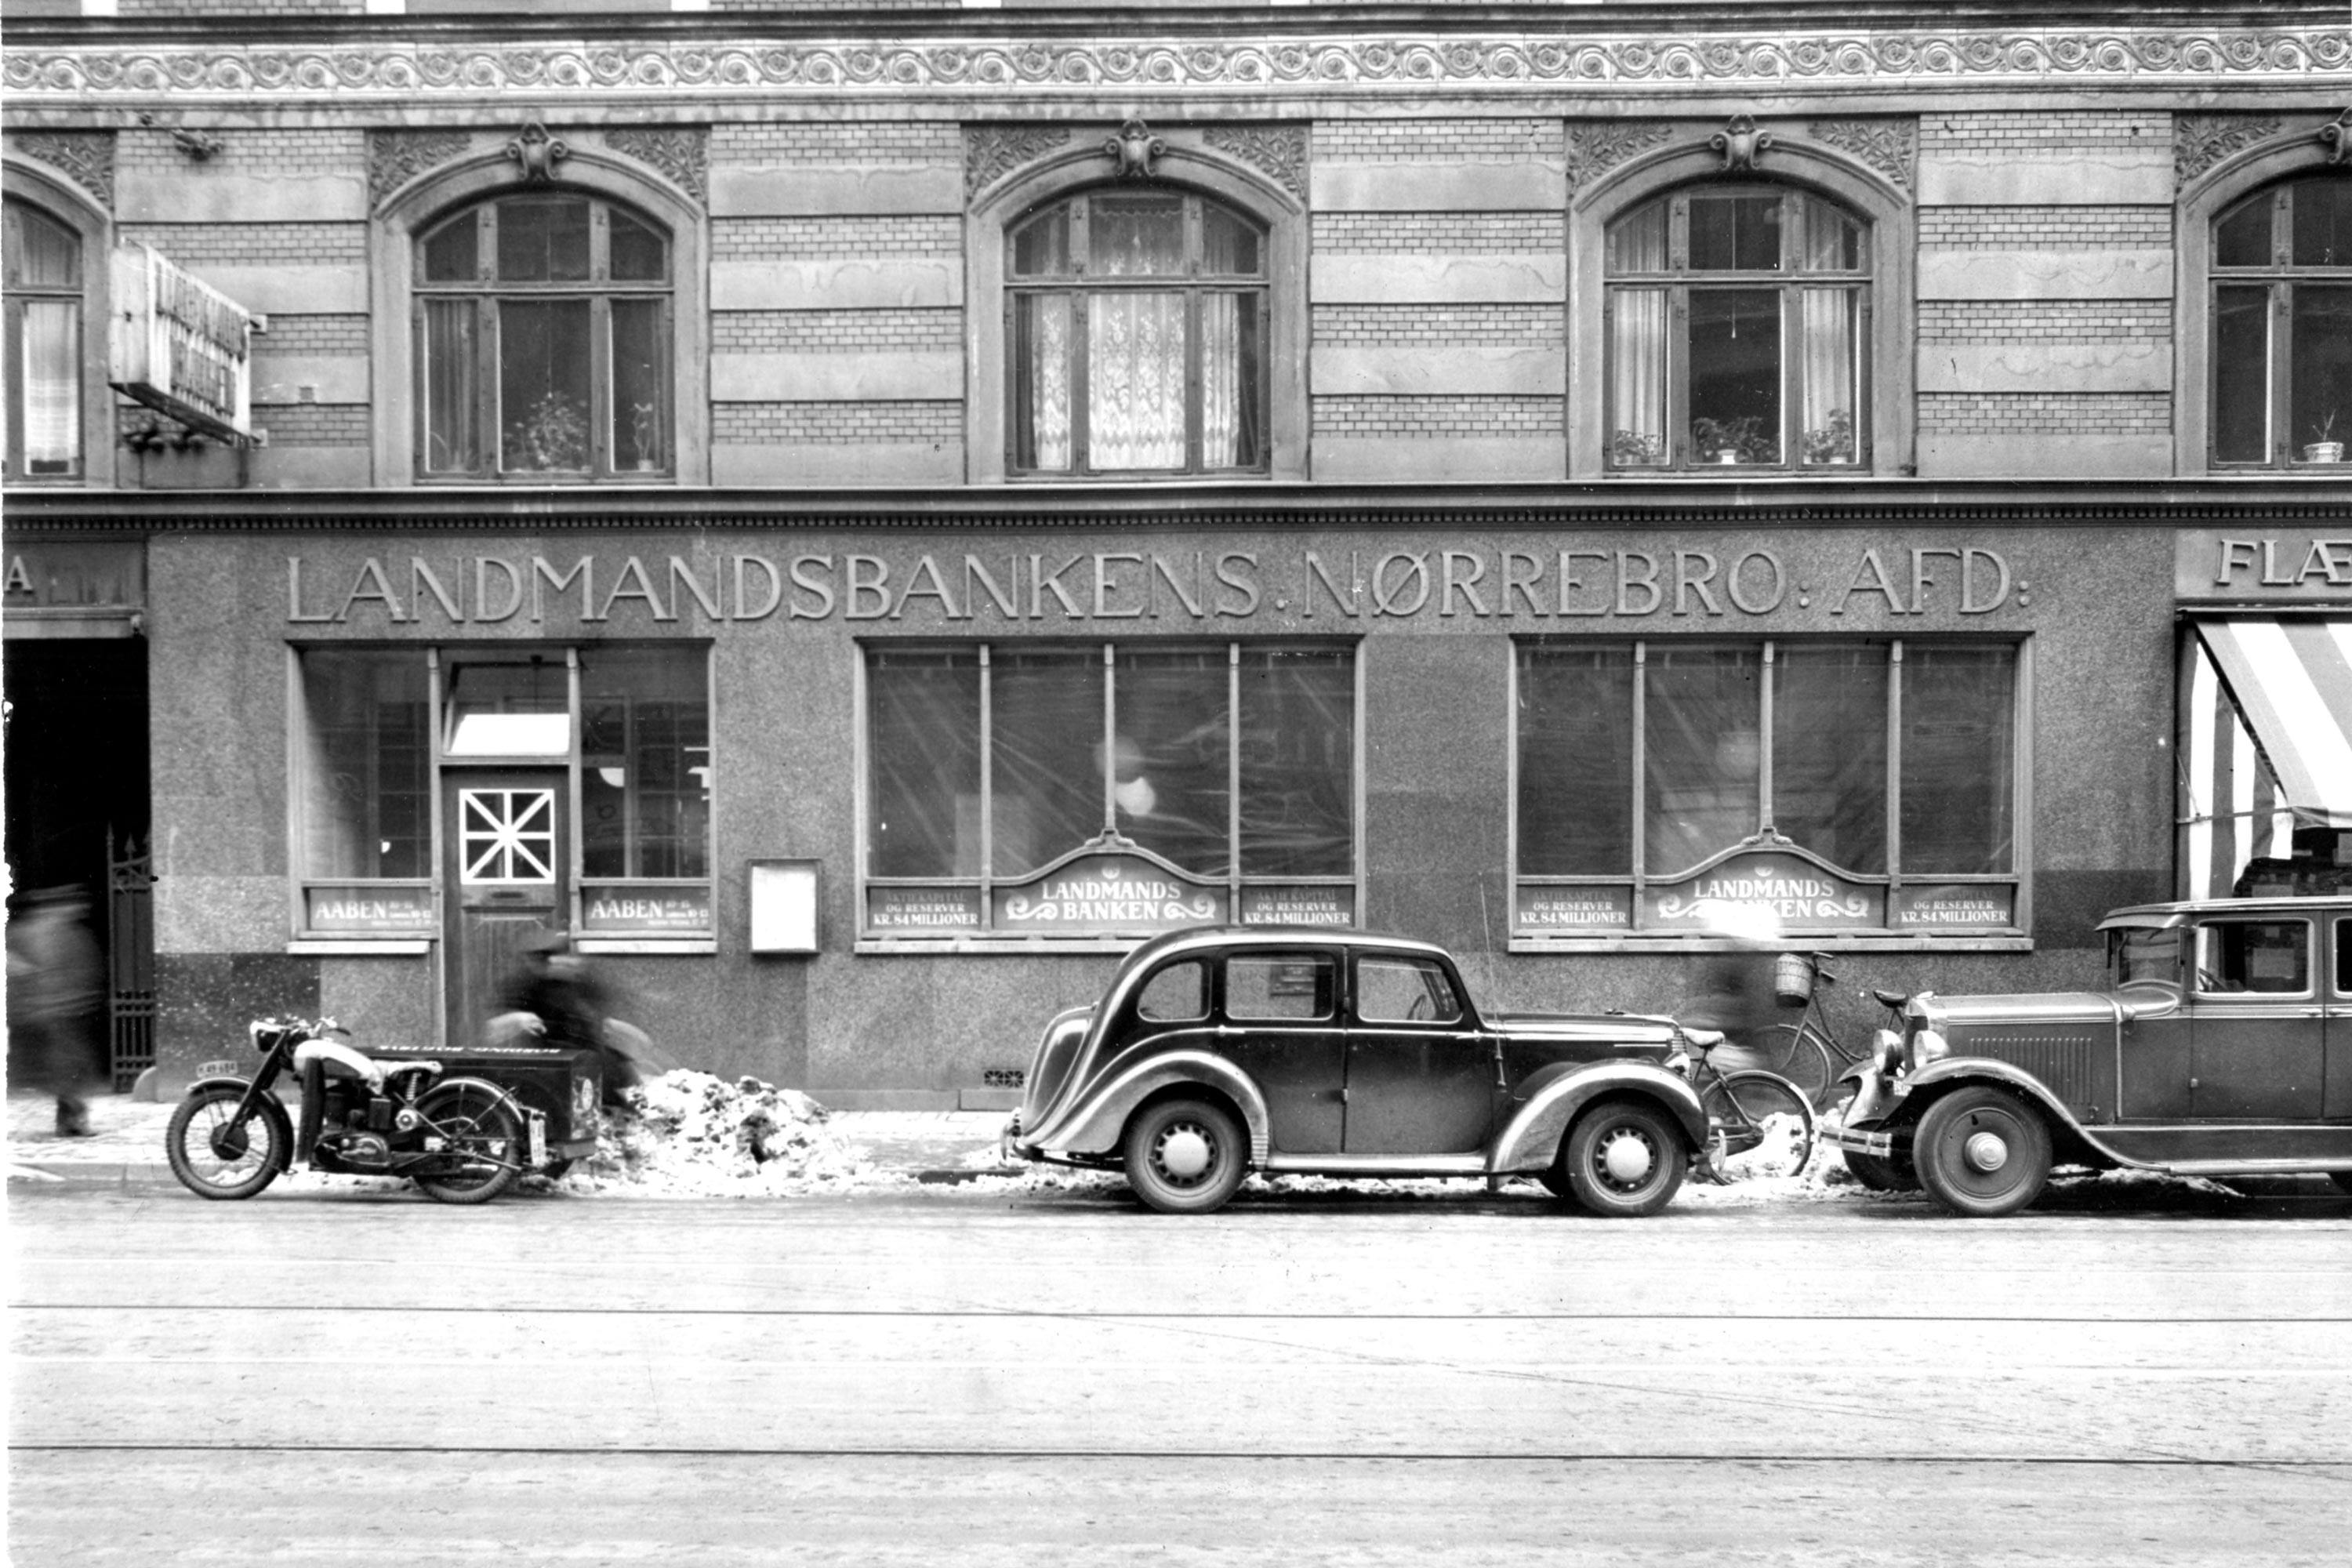 Landmandsbankens fillial på Nørrebrogade blev 29. marts 1951 udsat for et væbnet røveri, hvor to bankansatte mistede livet. Det skulle udvikle sig til at blive en af Danmarkshistoriens vildeste kriminalsager.